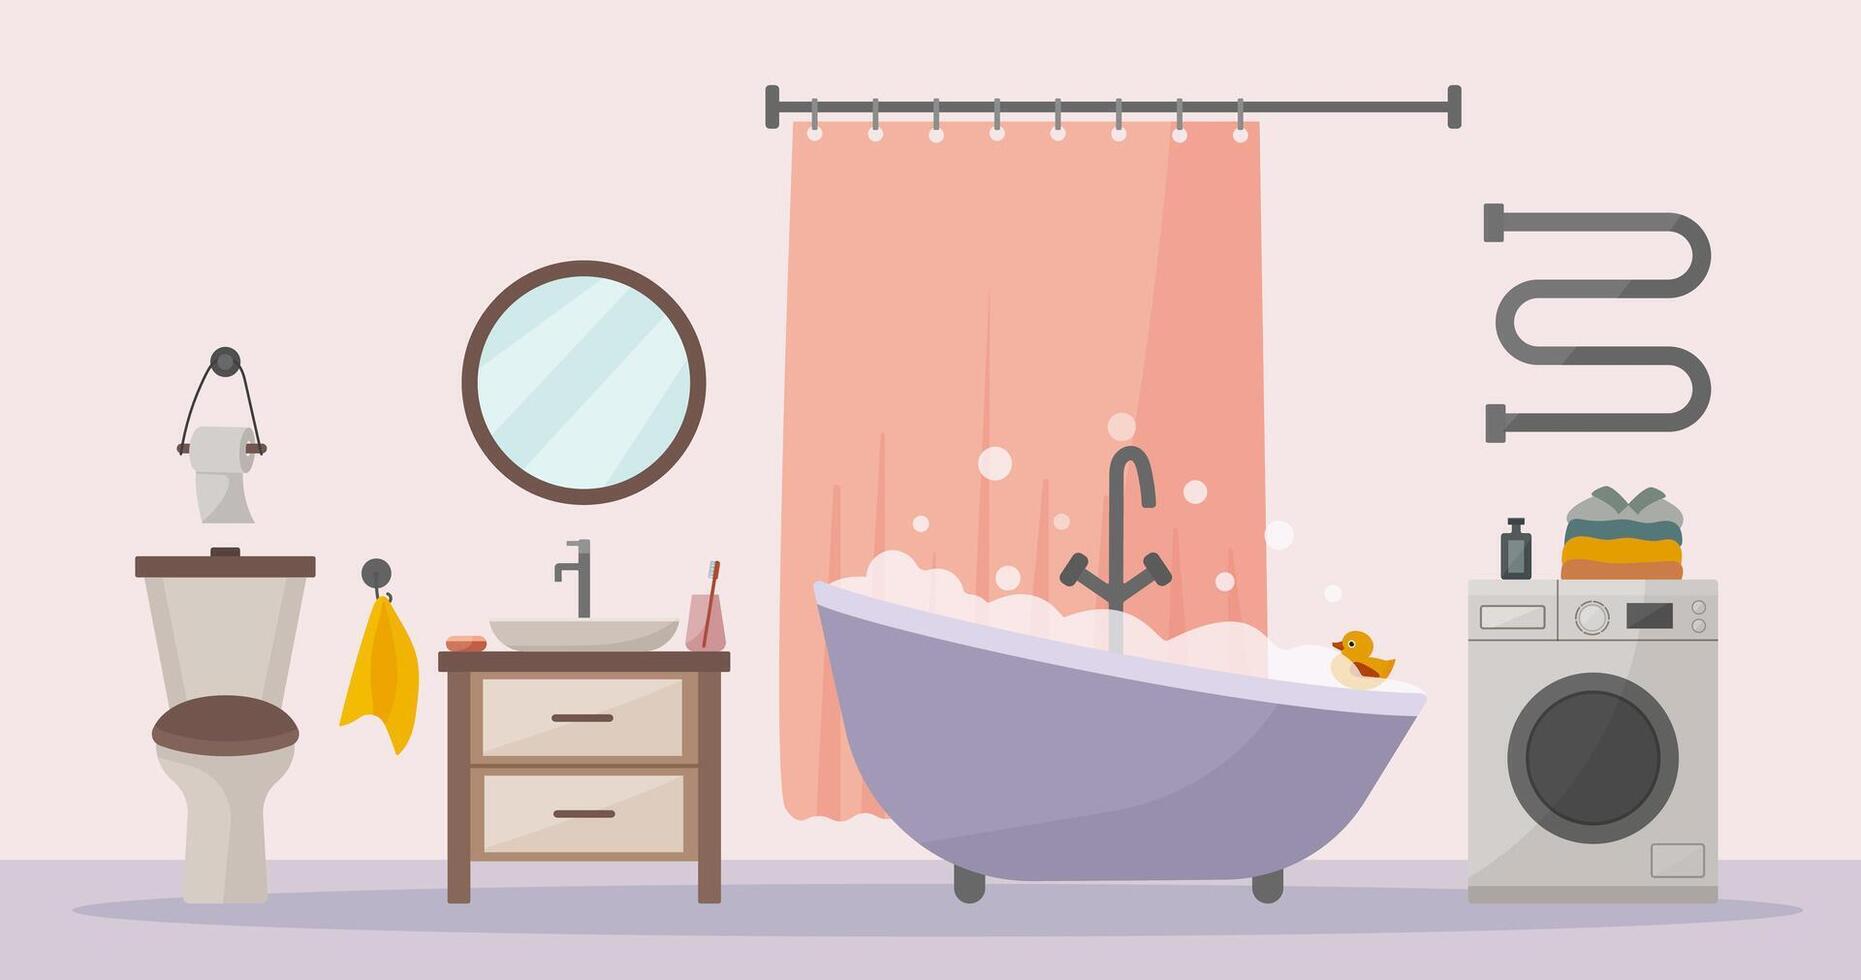 Stylish bathroom in flat vector style. Bath, washing machine, toilet, sink. Accessories shampoo, shower gel, soap, towel, mirror, bath curtain.